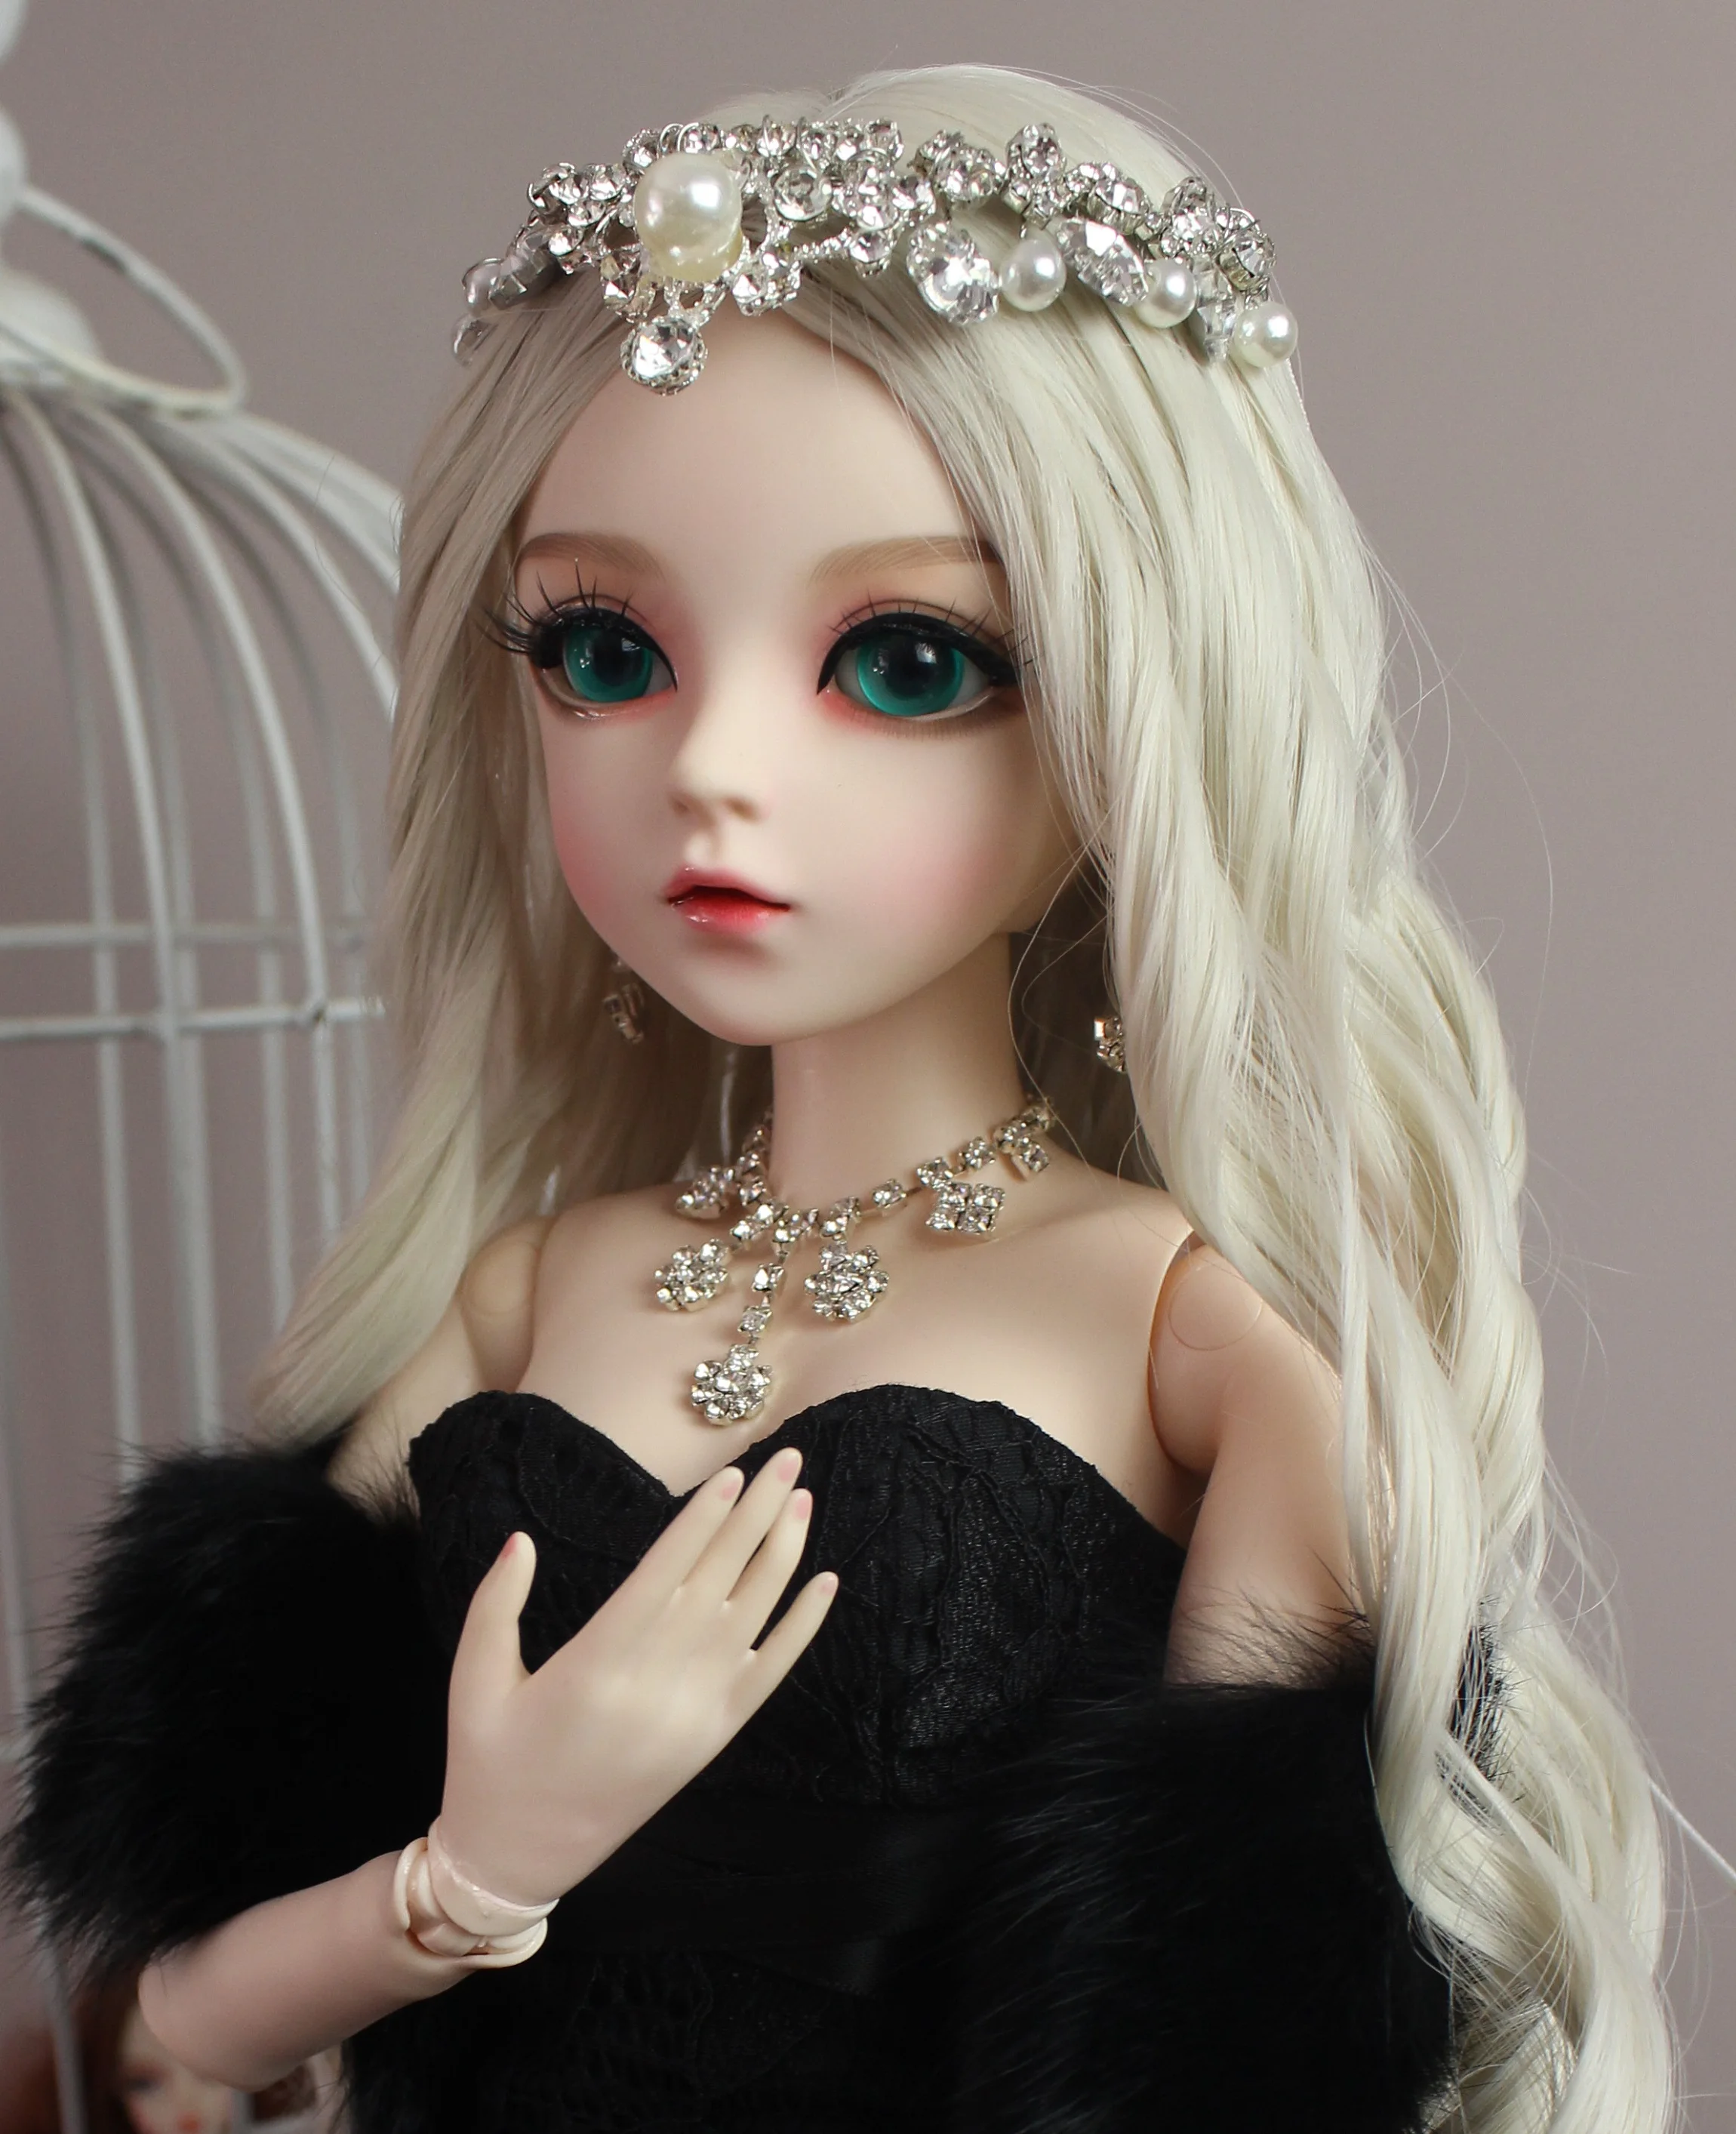 BJD 1/3 шарнирная кукла подарки для девочек ручная роспись макияж fullset Лолита/кукла принцесса с торжественное платье Звездная ночь